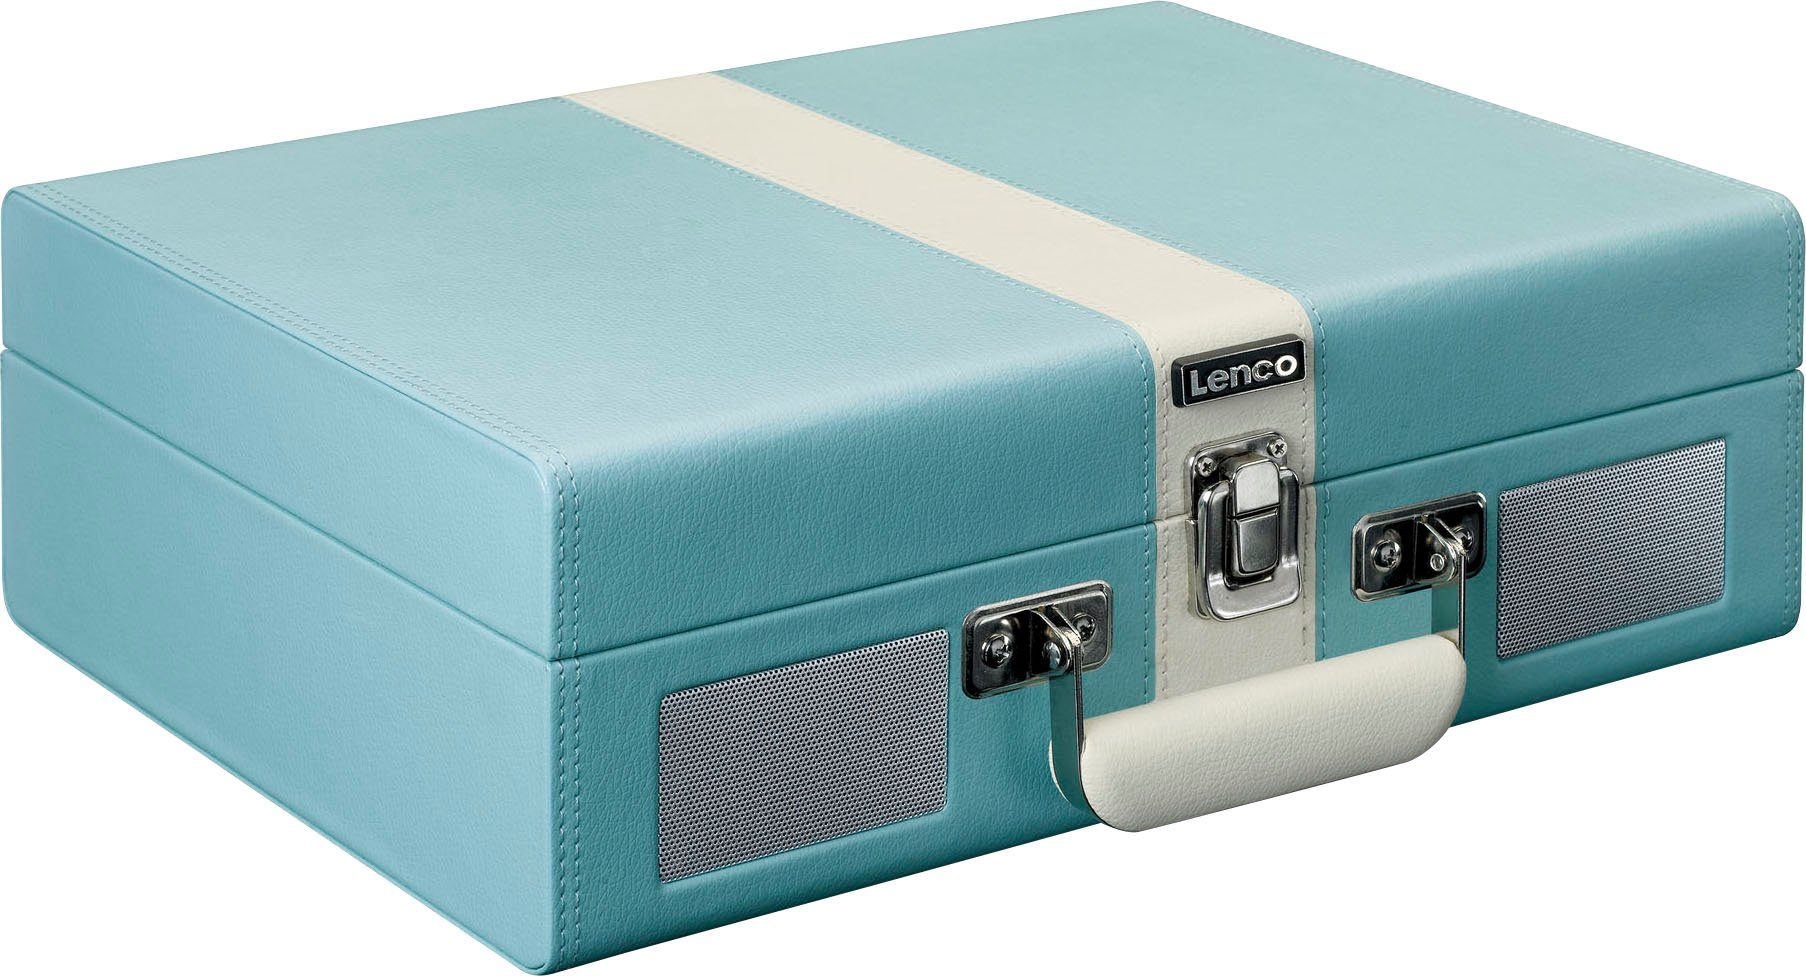 Informationen zum Versandhandel Lenco Koffer-Plattenspieler mit BT und (Riemenantrieb) eingebauten Blau-Weiß Plattenspieler Lsp